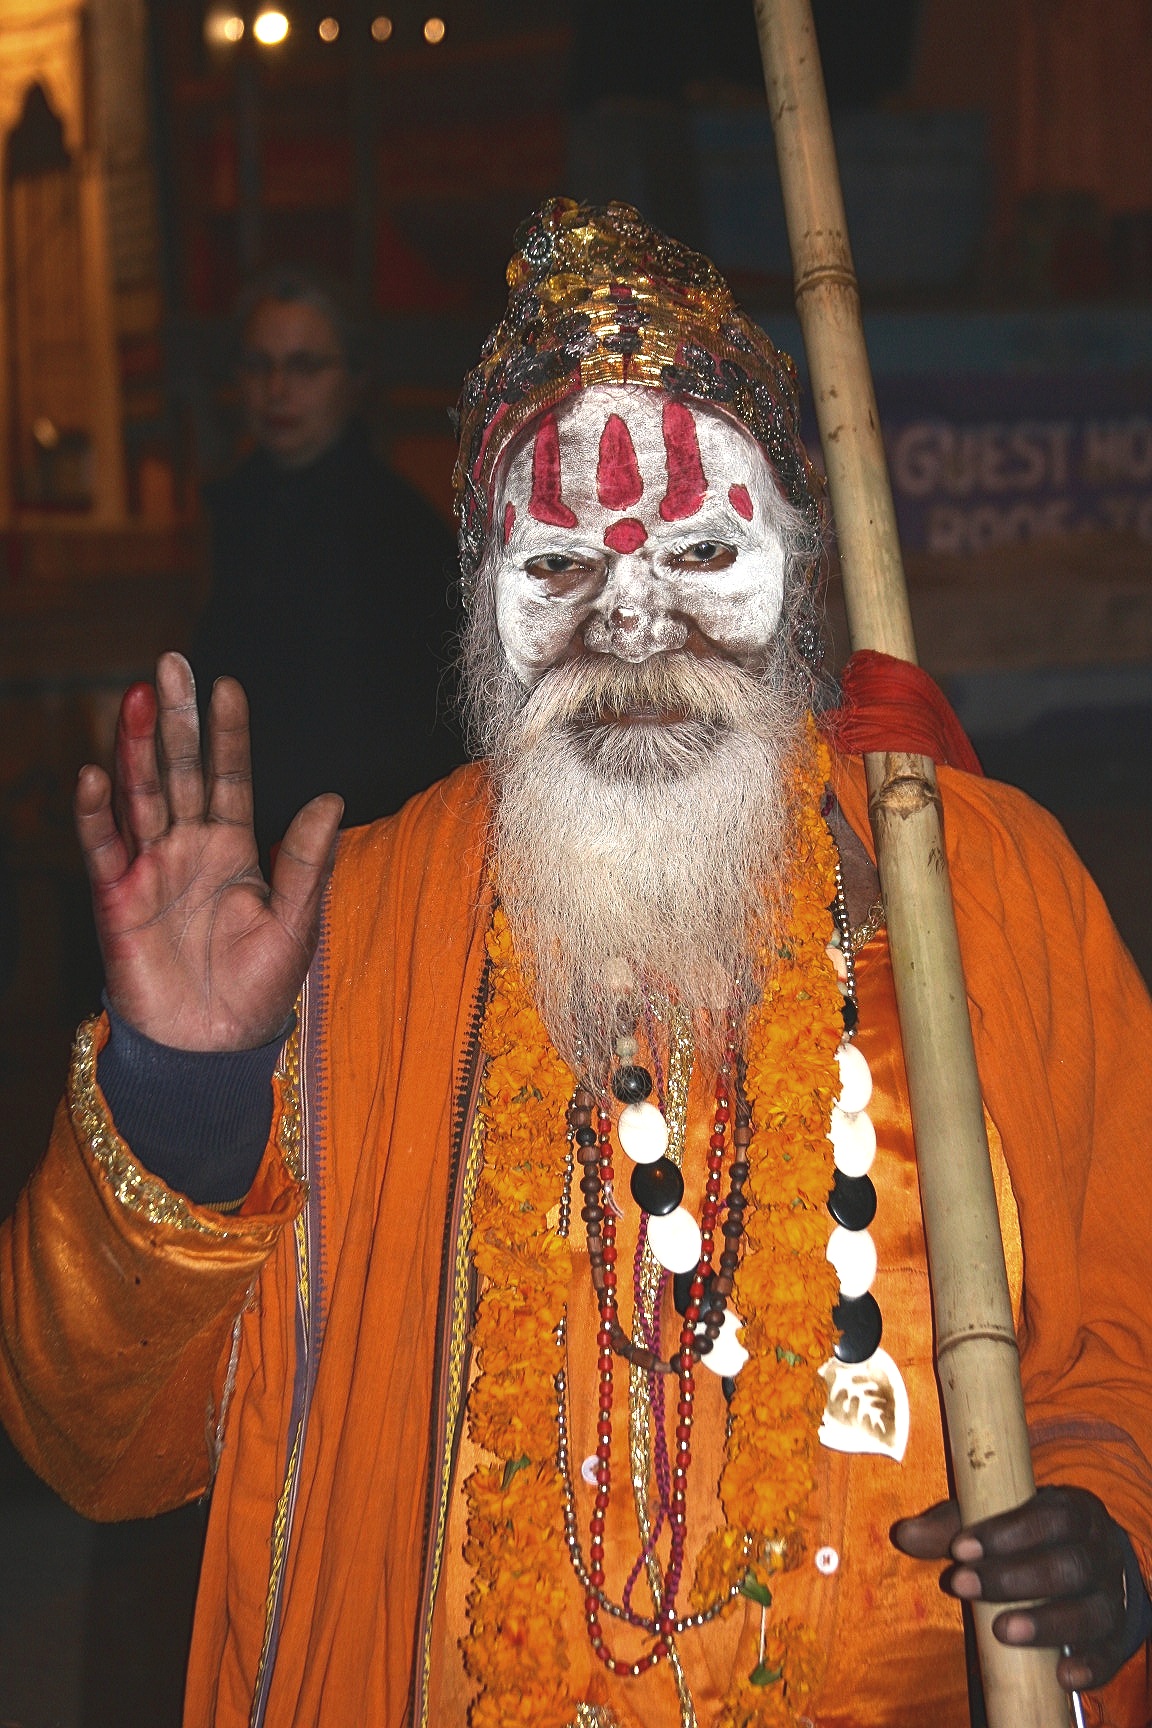 Sadhu at the Ganges River, Varanasi, India